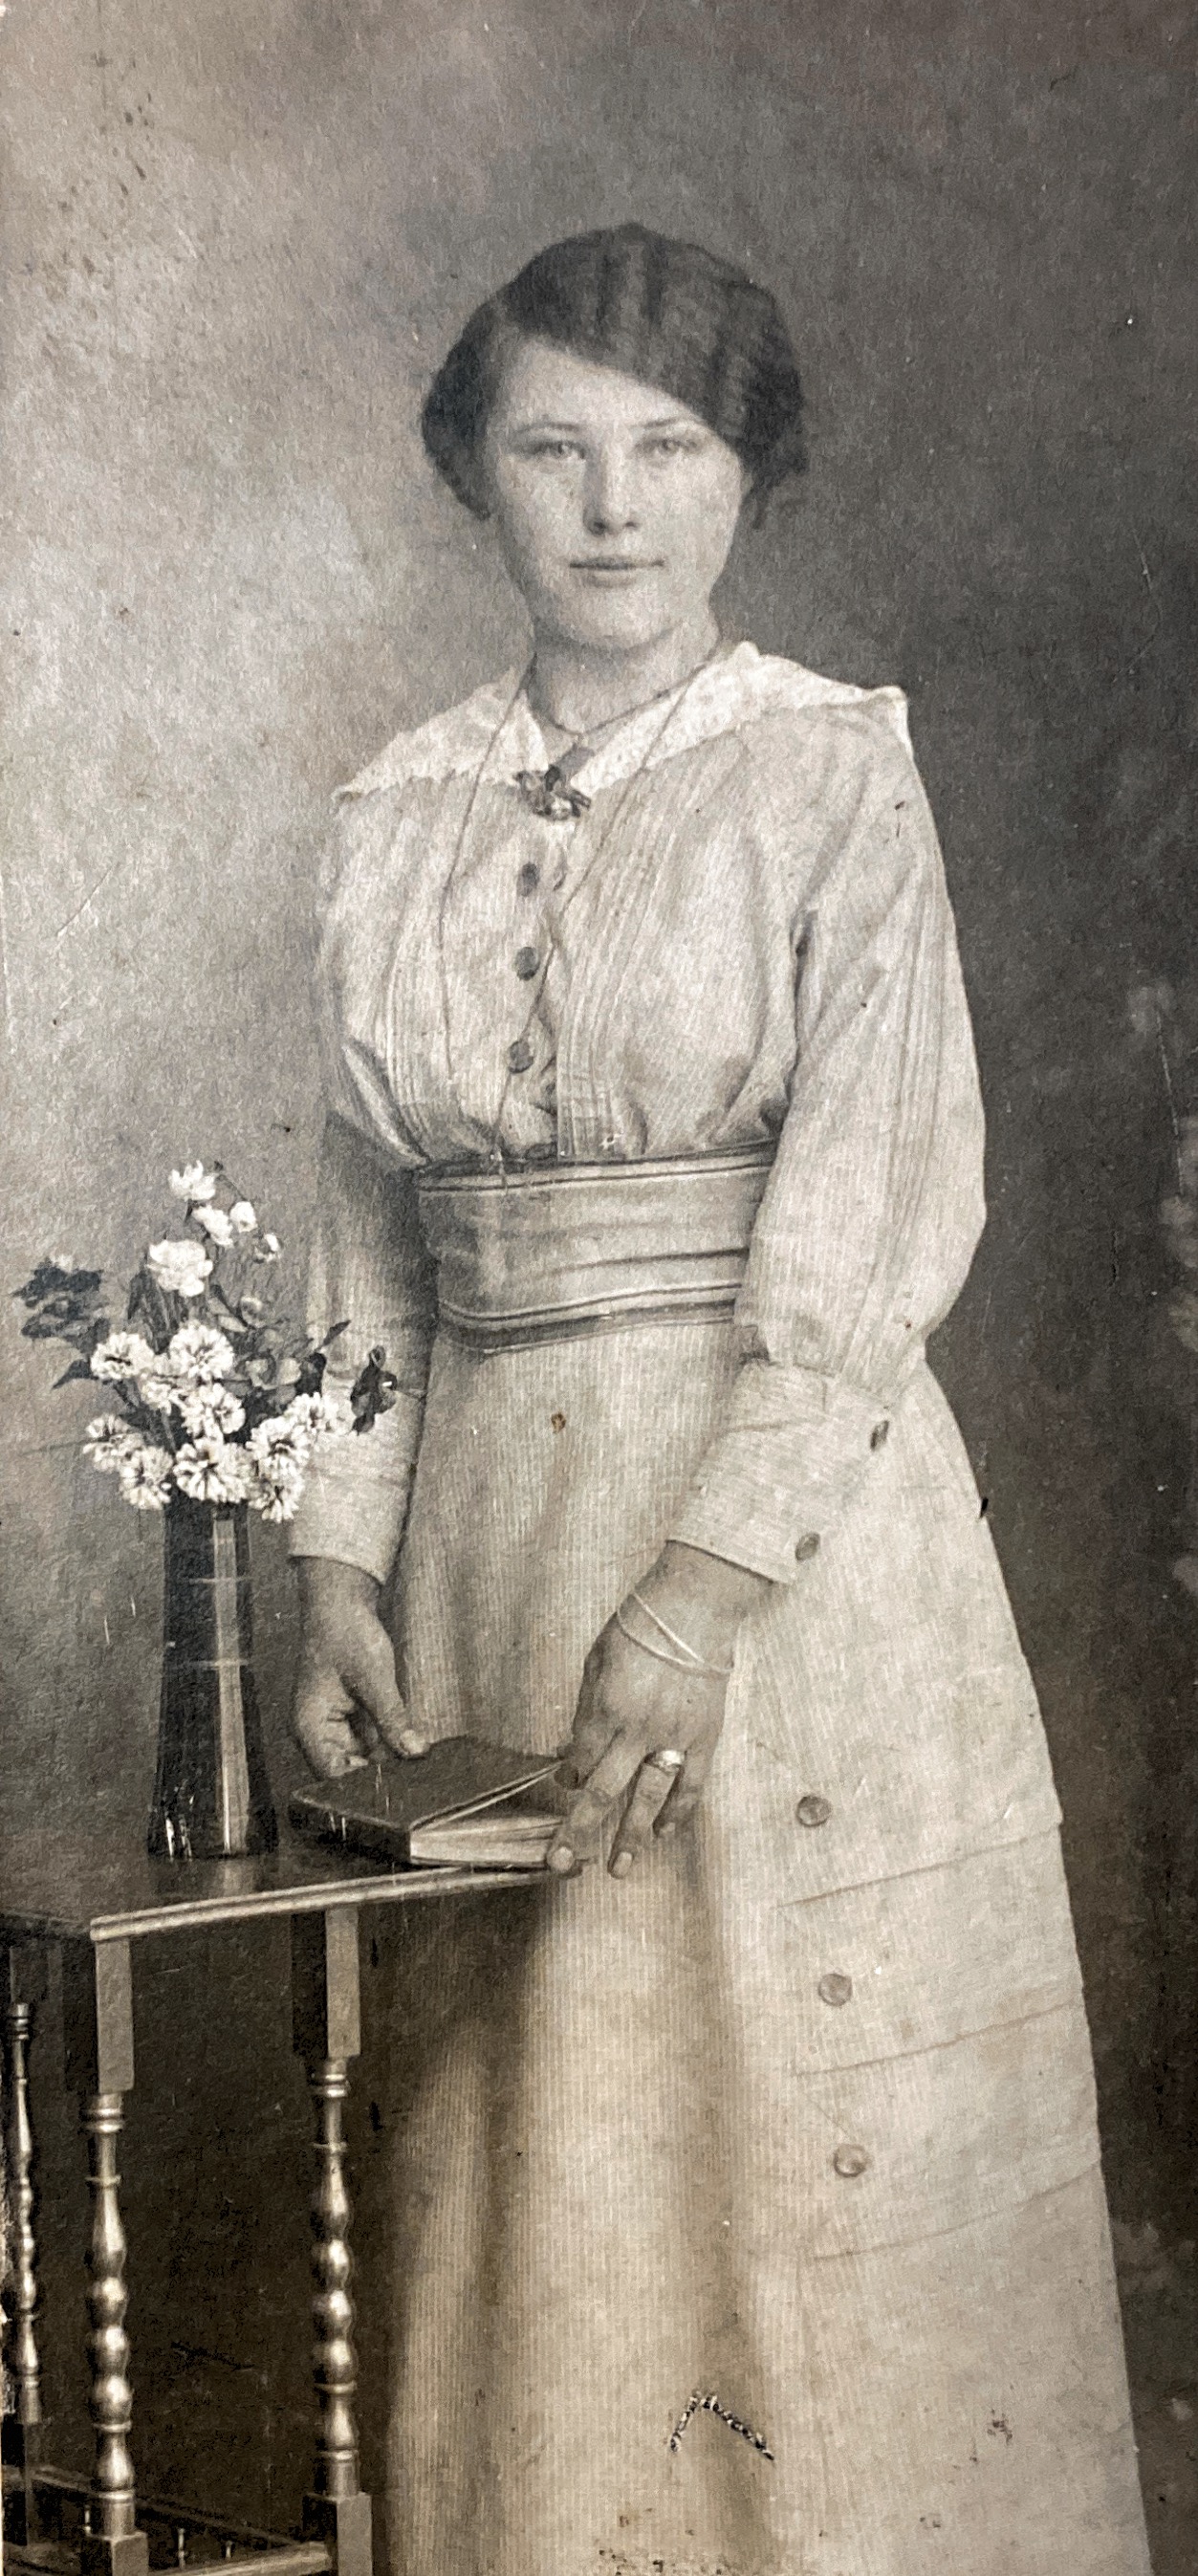 Margarethe Wilbert nee Krämer, born 18th October 1896